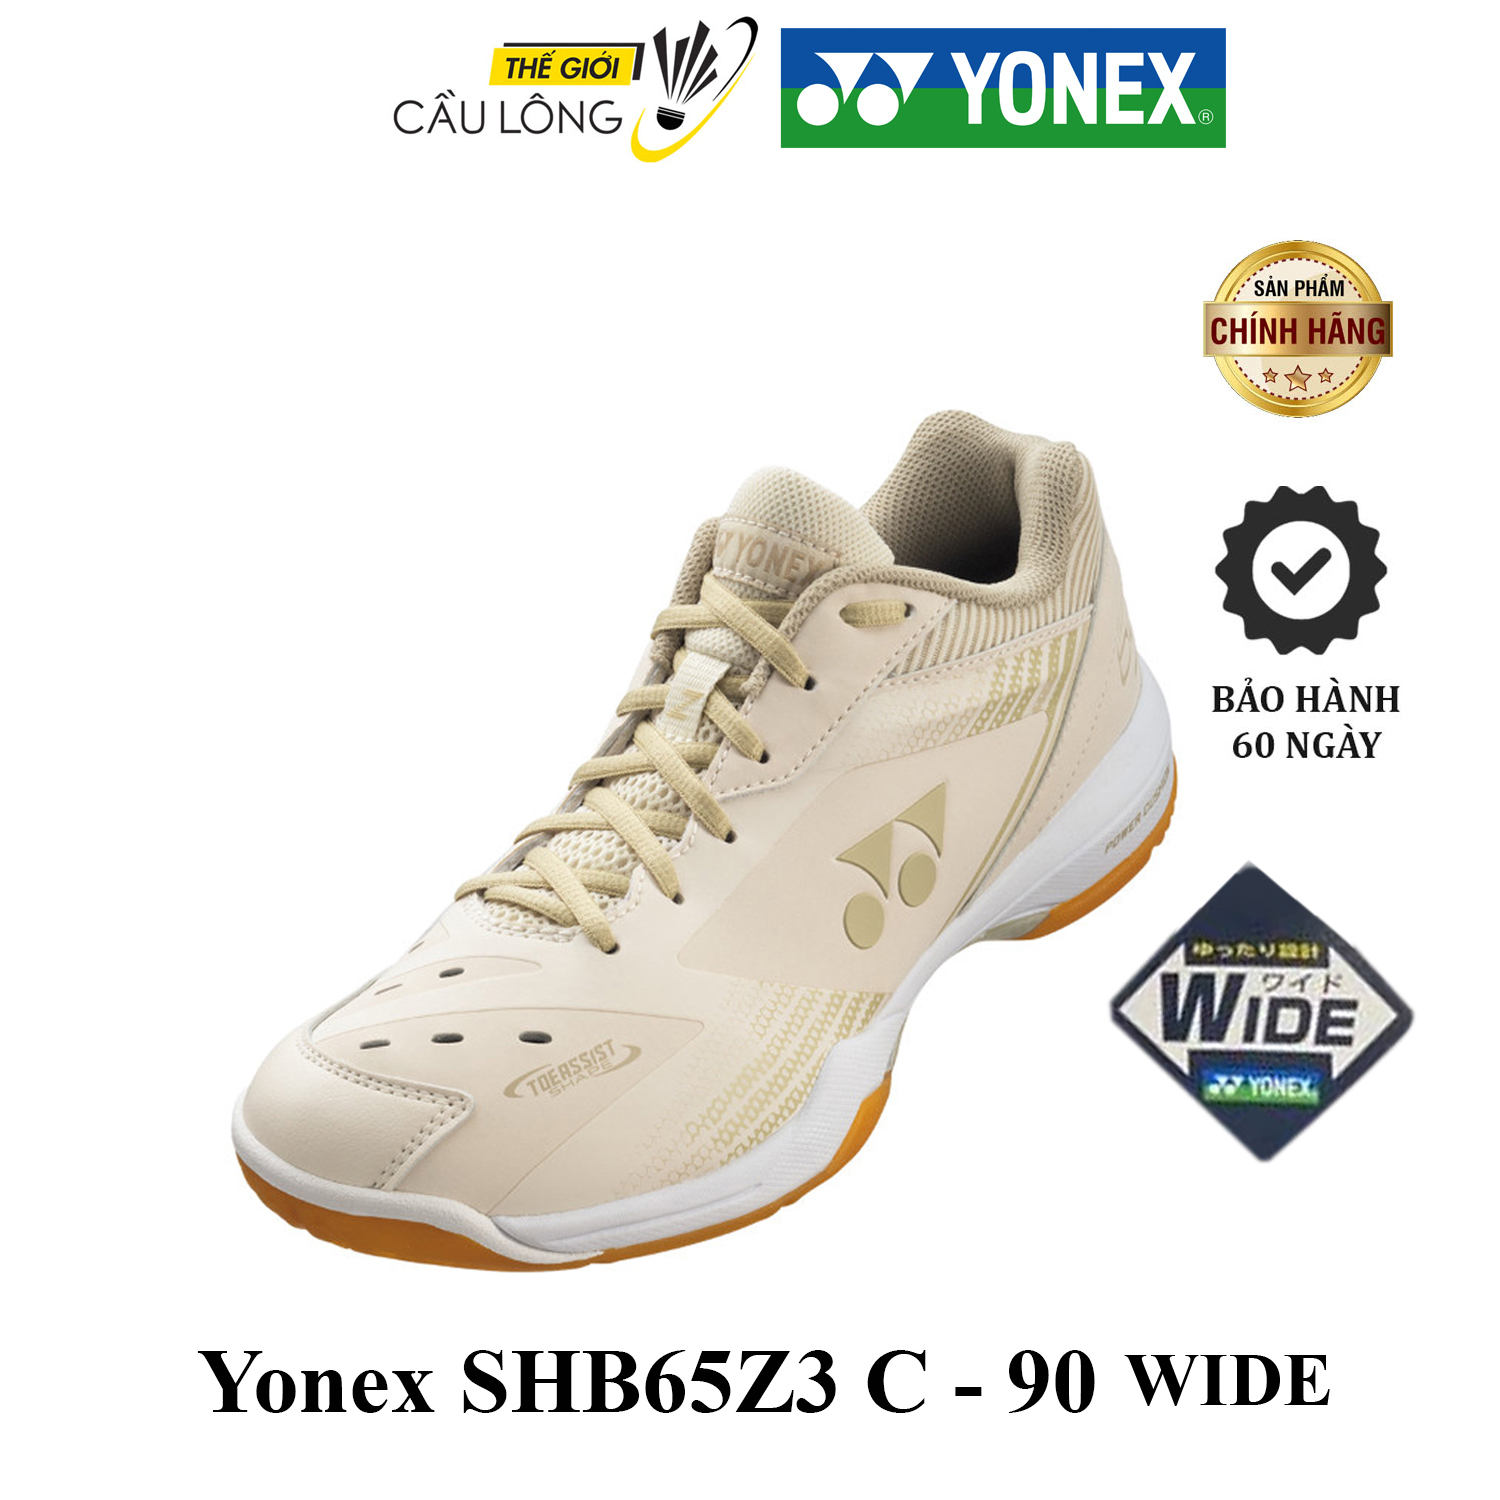 YONEX SHB65Z3 C-90 WIDE